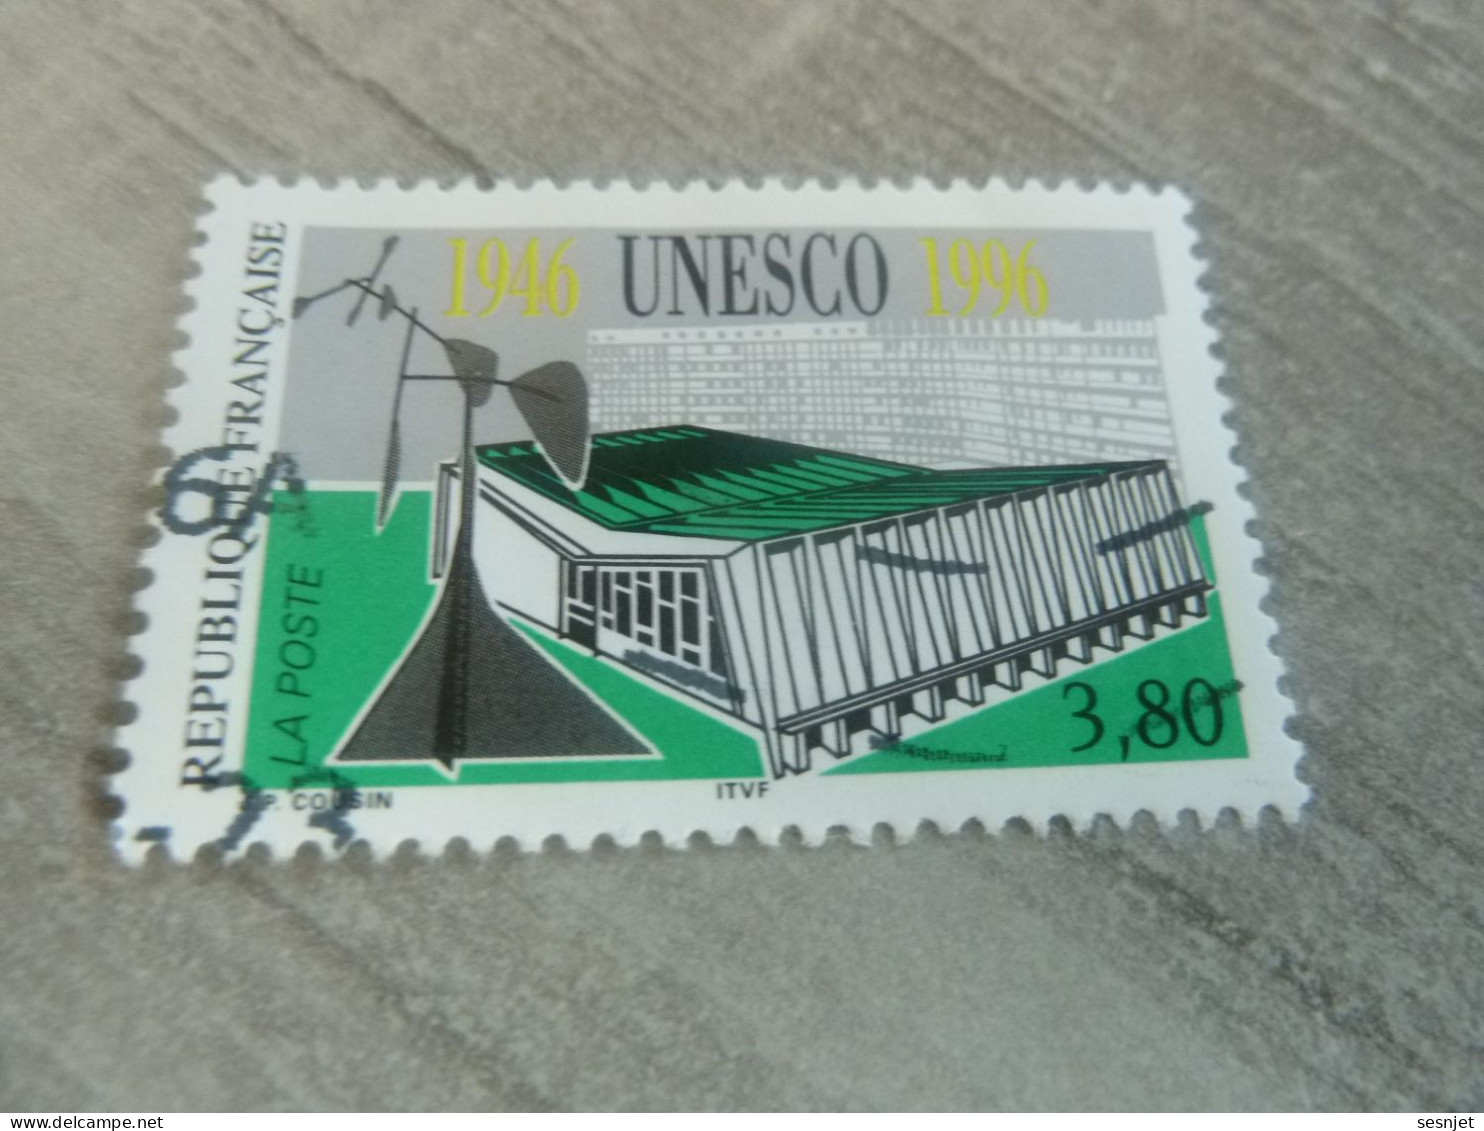 Cinquantenaire De L'Unesco - 3f.80 - Yt 3035 - Multicolore - Oblitéré - Année 1996 - - Usados